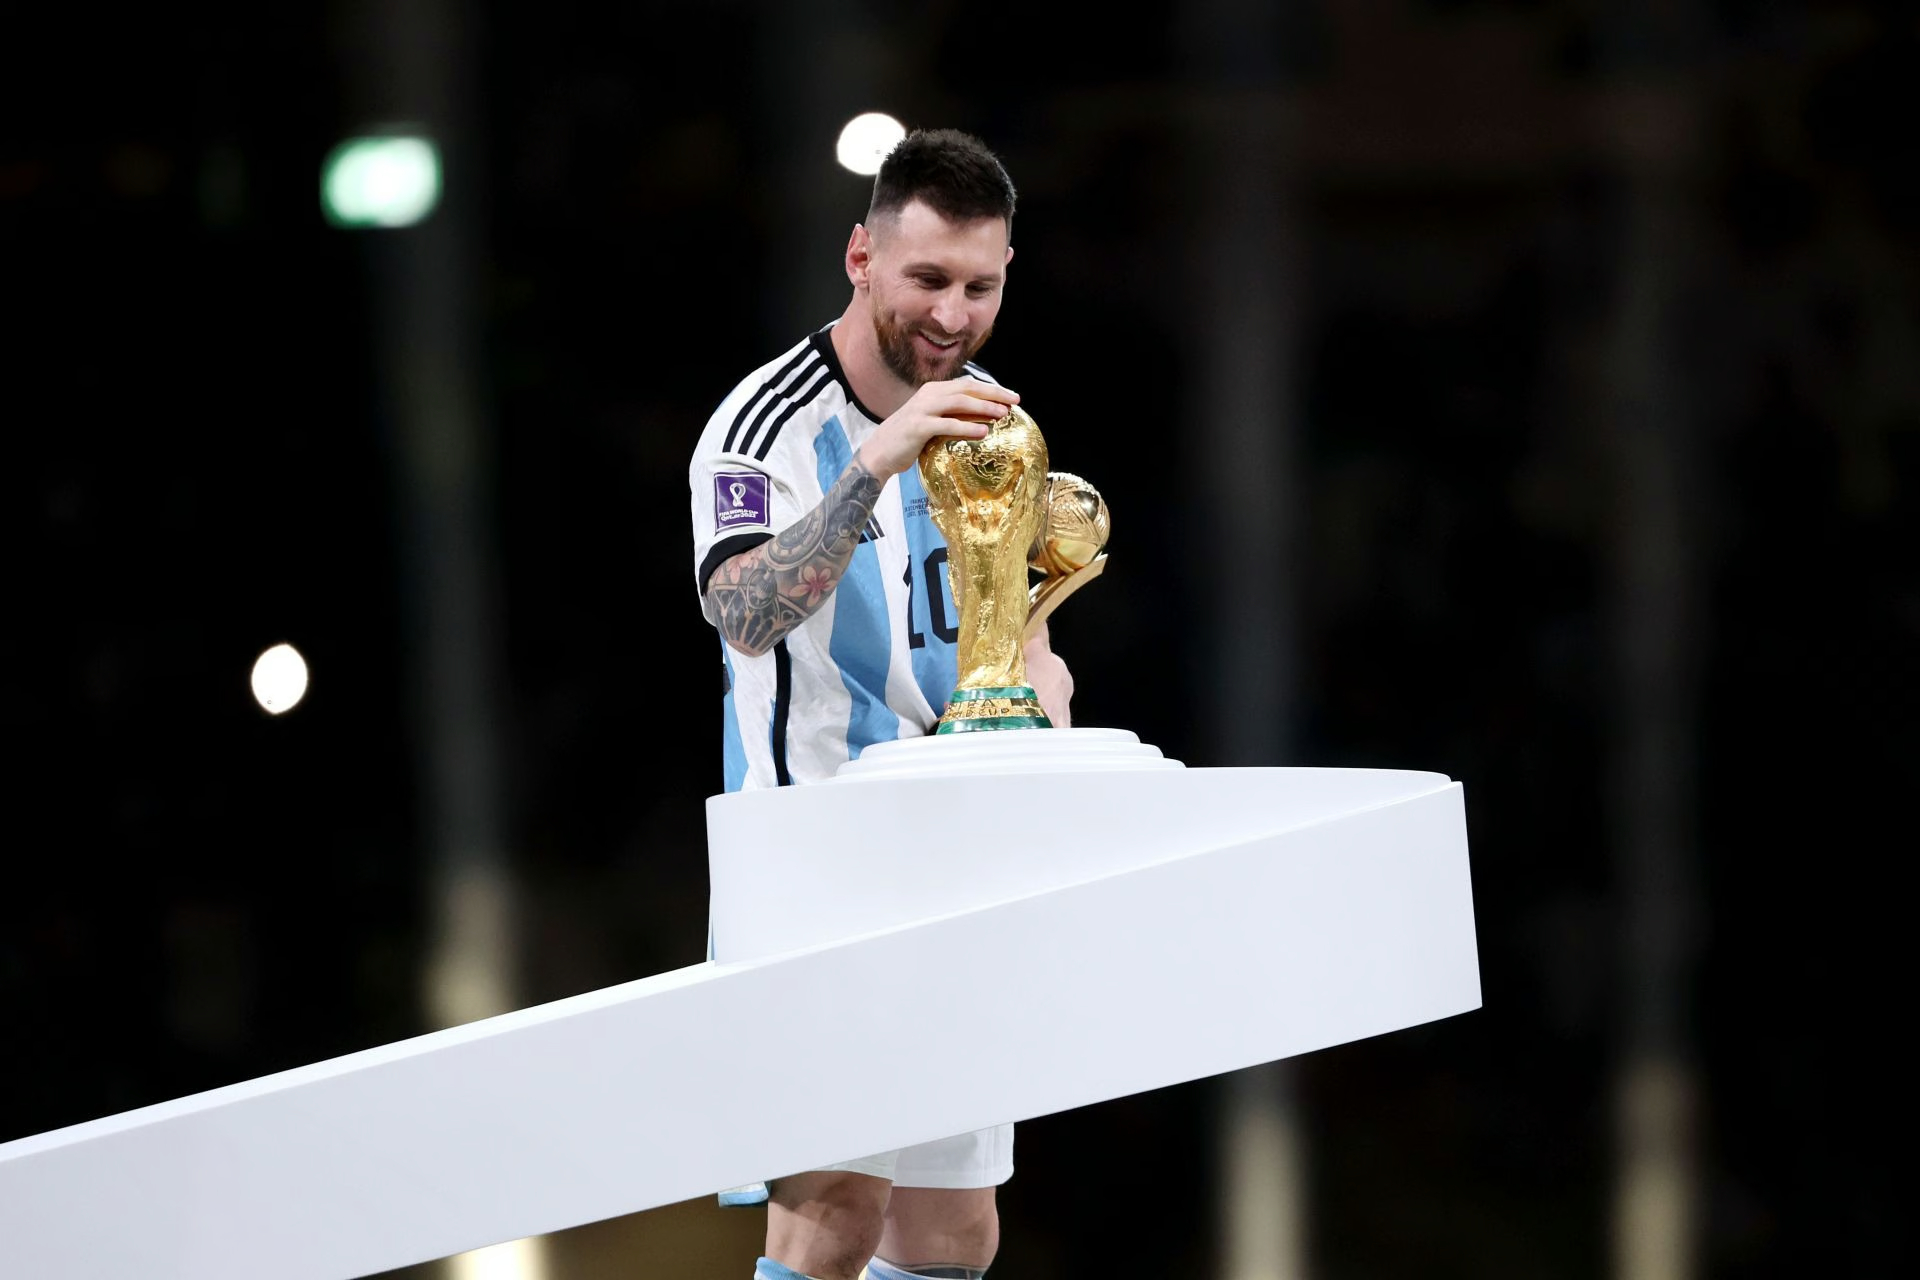 Pourquoi Messi et sa victoire en Coupe du monde sont si importants, même pour ceux qui ne suivent pas le football